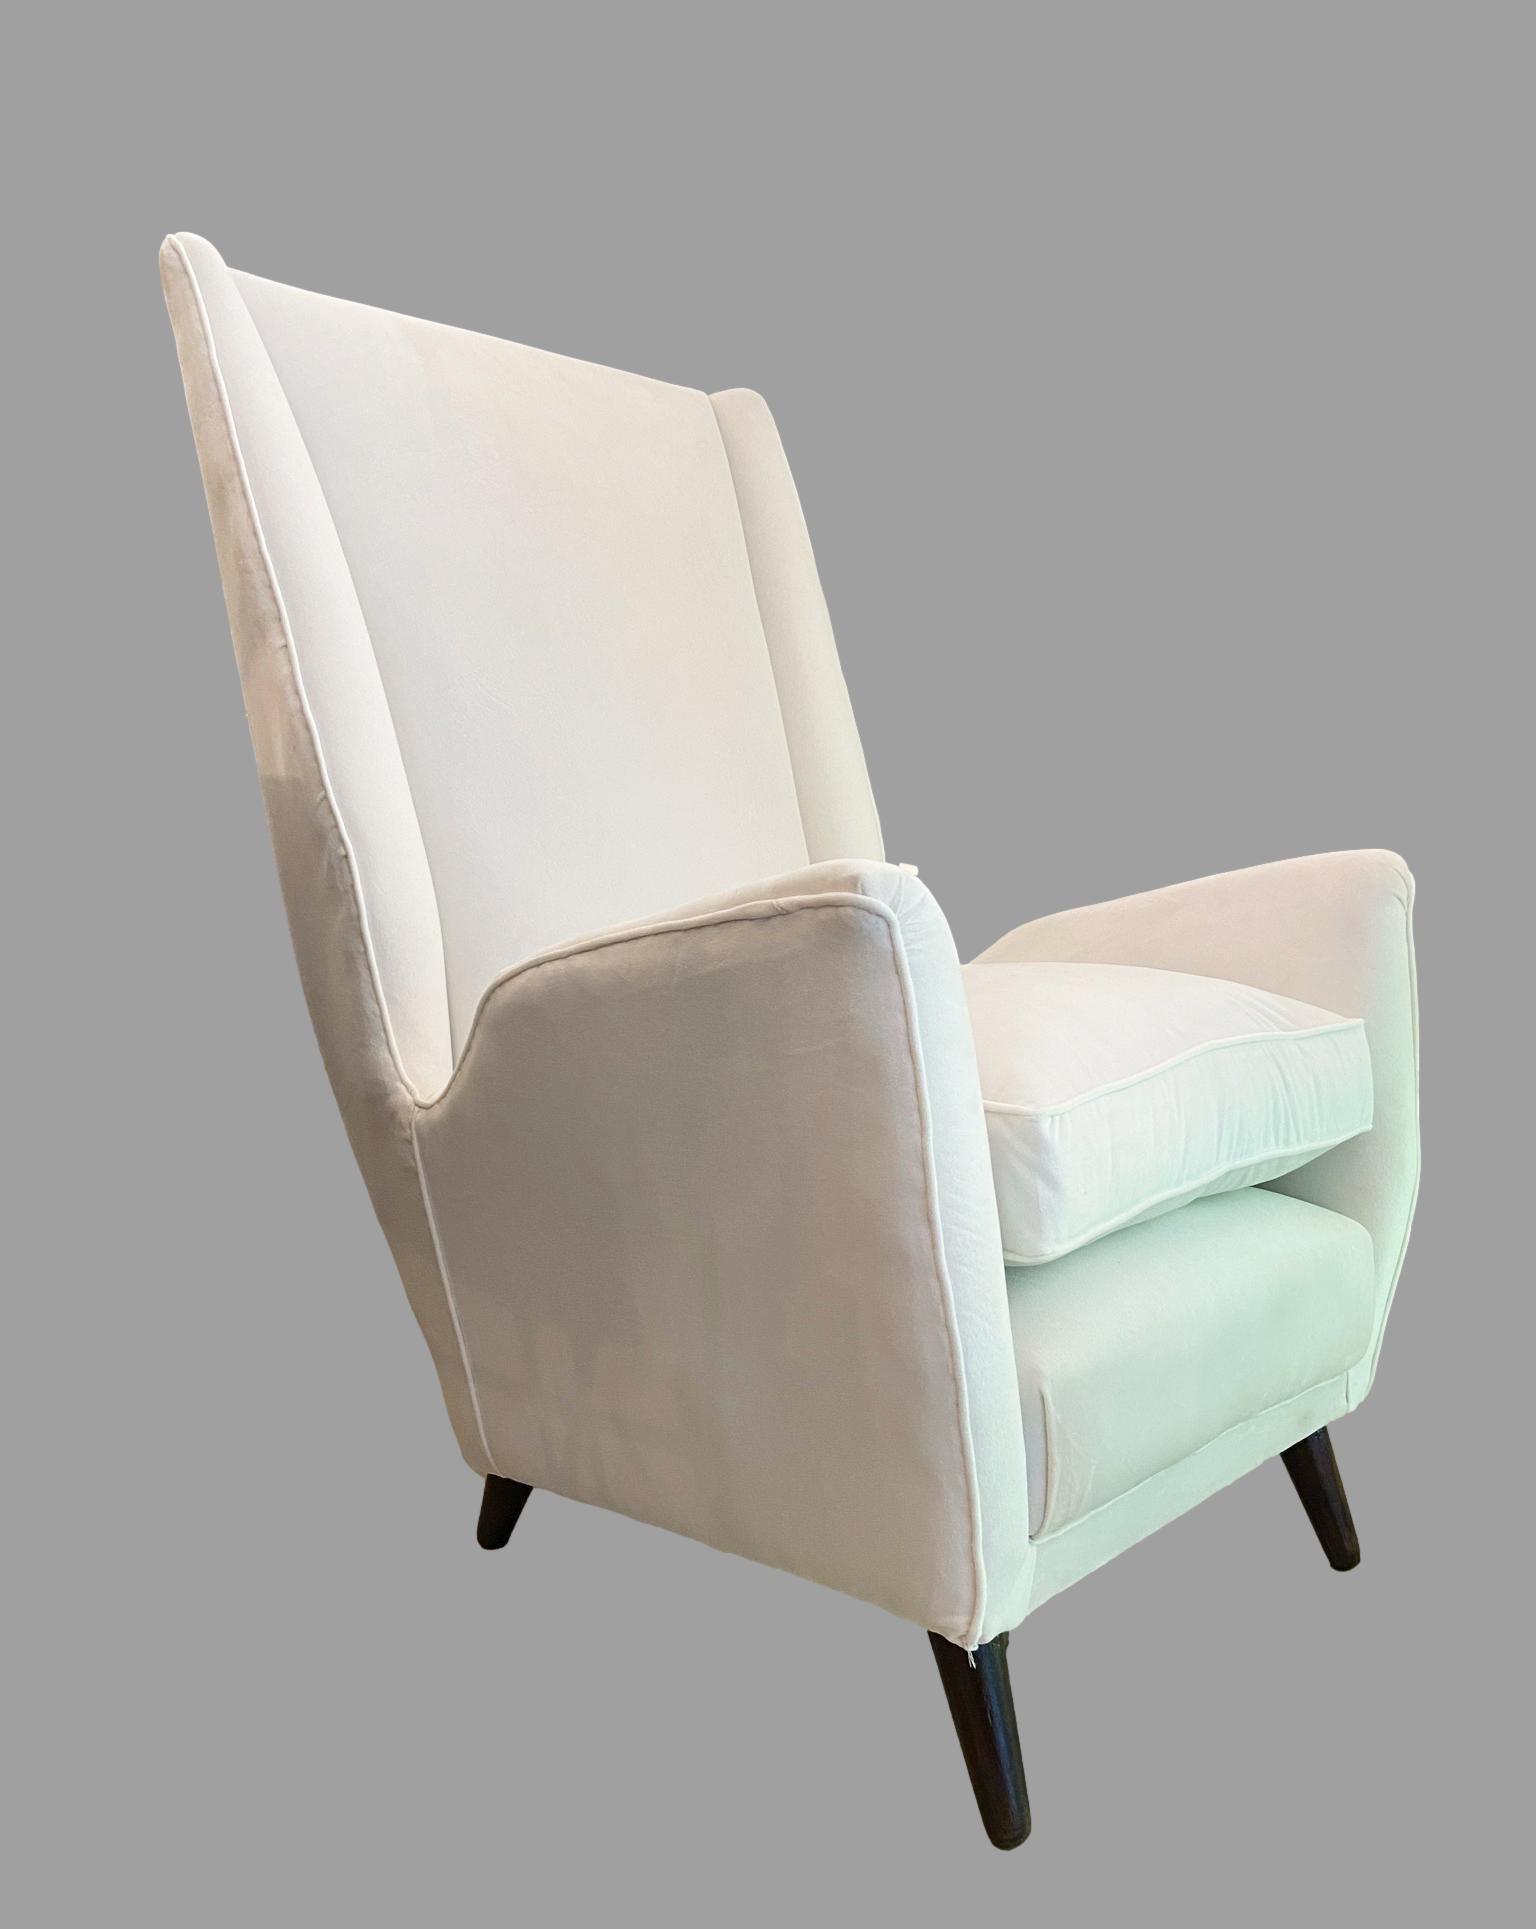 Cet élégant fauteuil a été produit par la société ISA de Bergame:: en Italie:: au début des années 1950. 
À la fin des années 1940 et dans les années 1950:: ISA a été chargé de produire une série de projets extraordinaires de Gio Ponti. 
Le dossier